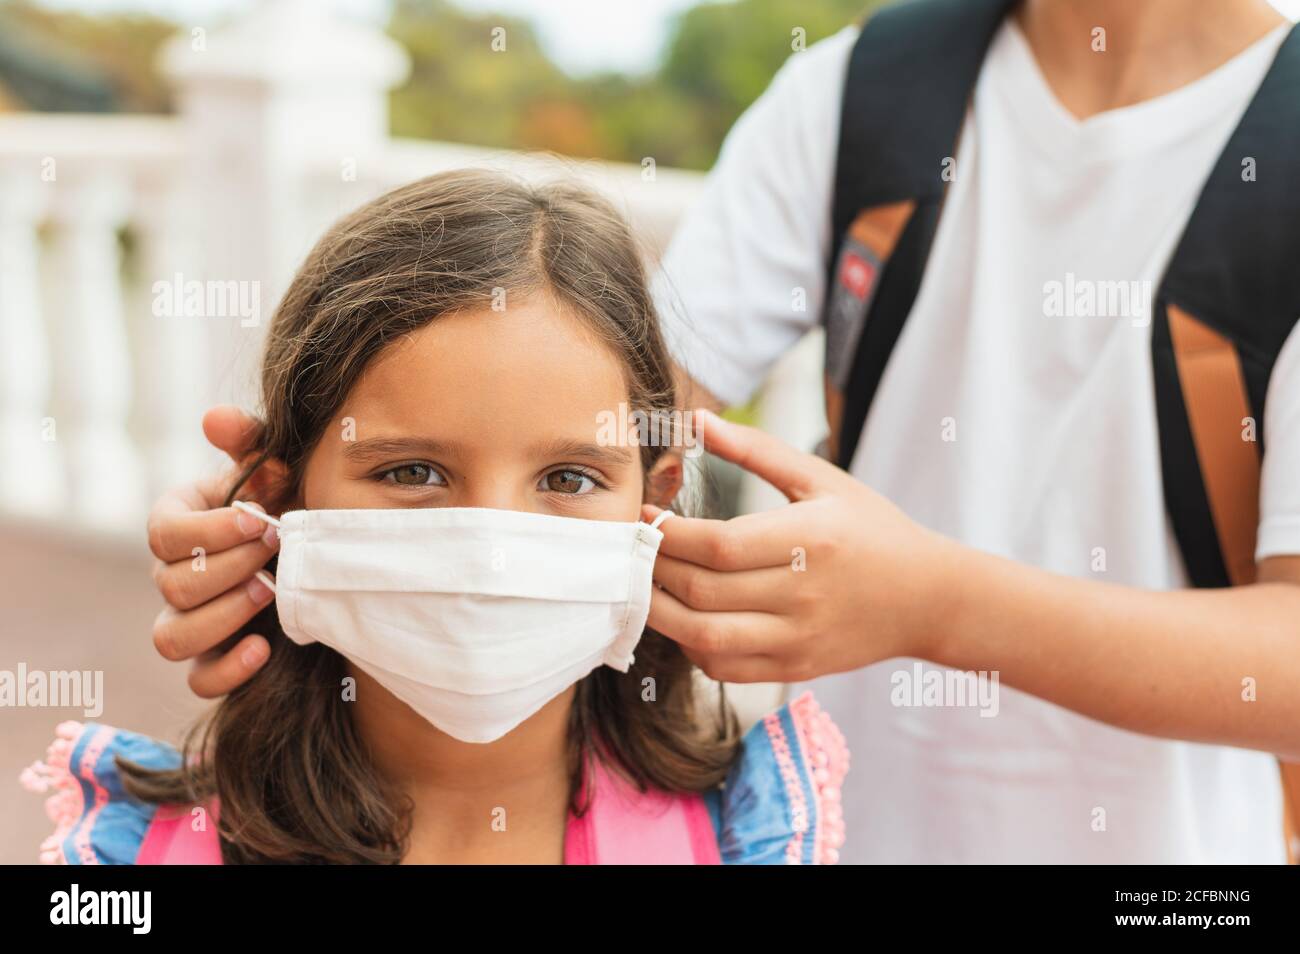 Bruder zieht ihrer Schwester sterile medizinische Maske an. Kind, trägt Gesichtsmaske, vor Infektionen von Viren, Pandemie, Ausbruch und Epidemie von Krankheiten zu schützen Stockfoto